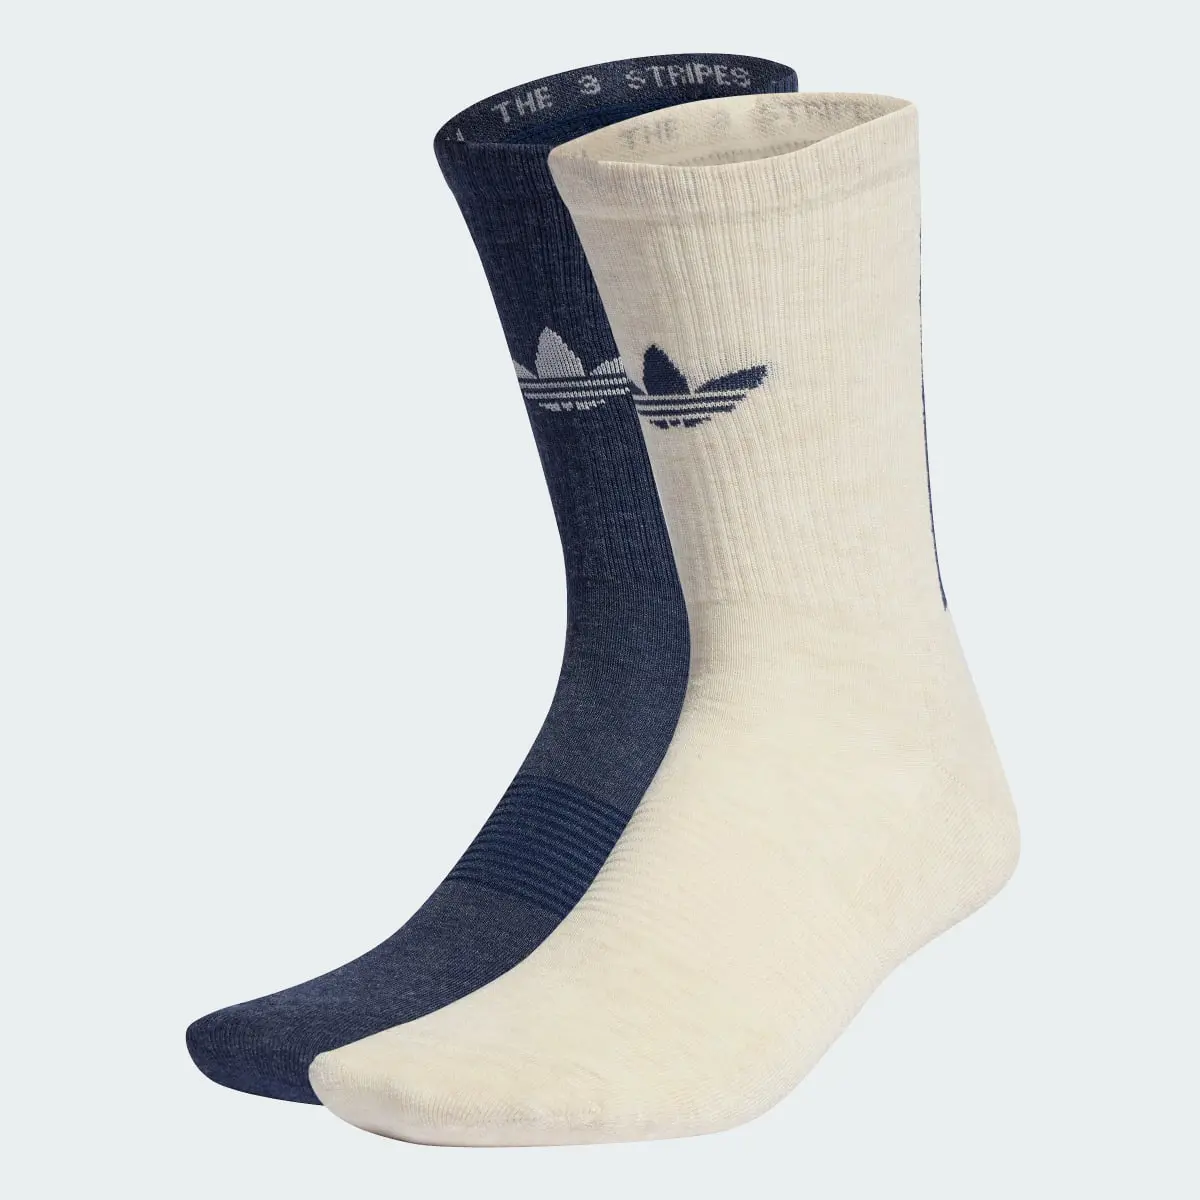 Adidas Meias de Cano Médio Trefoil Premium – 2 pares. 2